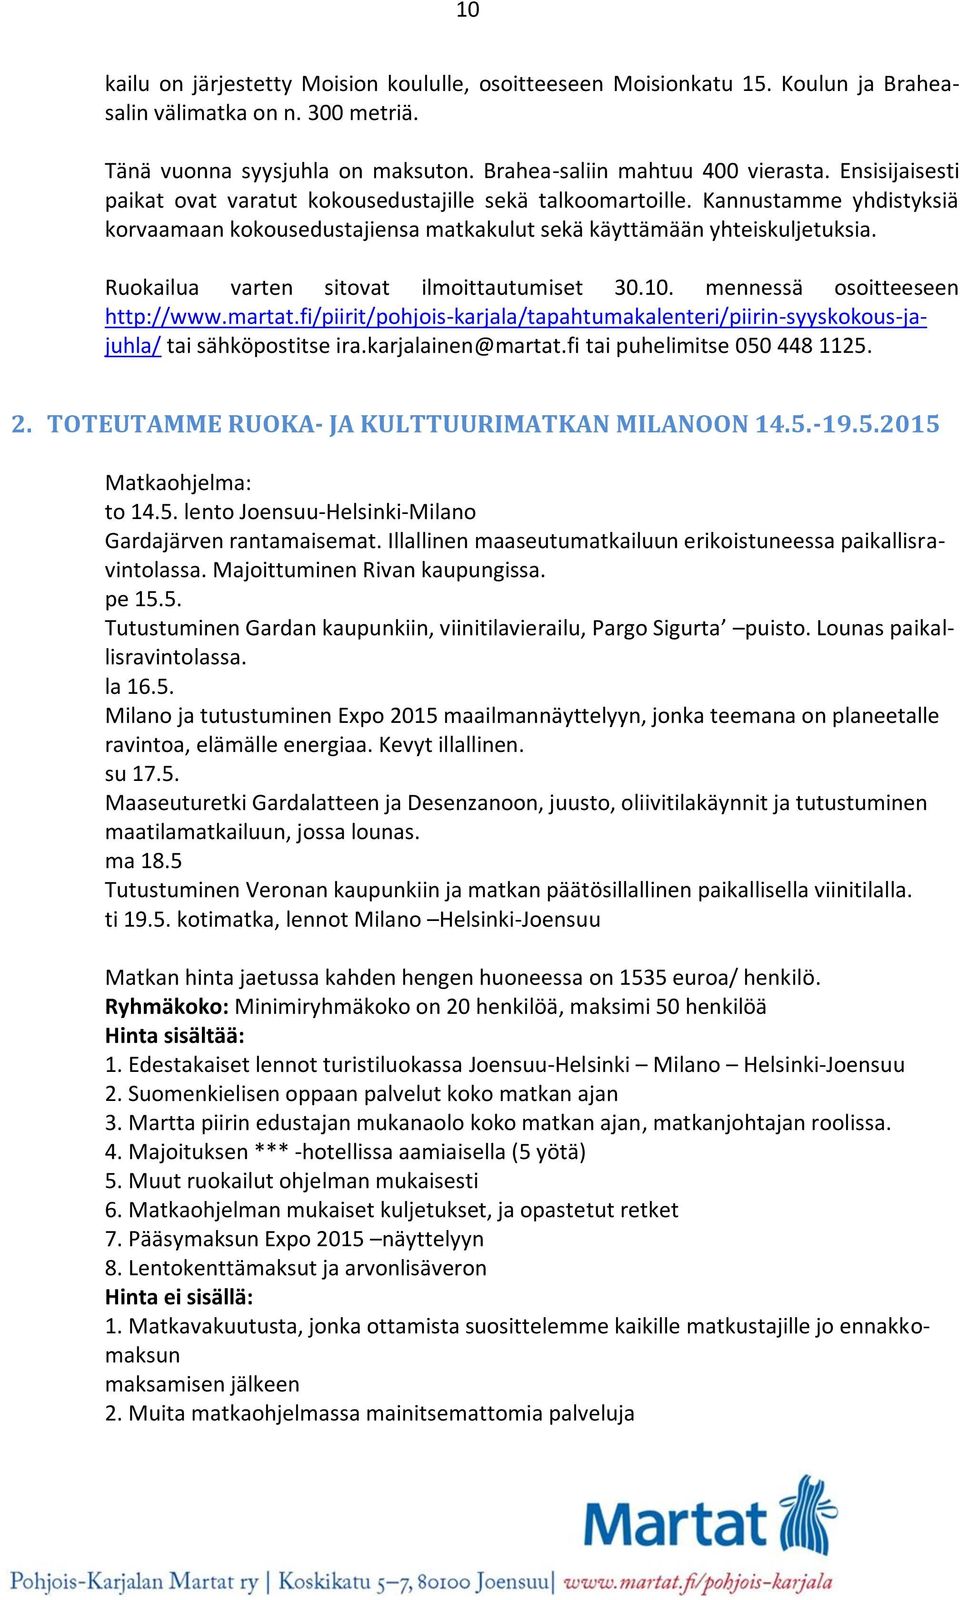 Ruokailua varten sitovat ilmoittautumiset 30.10. mennessä osoitteeseen http://www.martat.fi/piirit/pohjois-karjala/tapahtumakalenteri/piirin-syyskokous-jajuhla/ tai sähköpostitse ira.